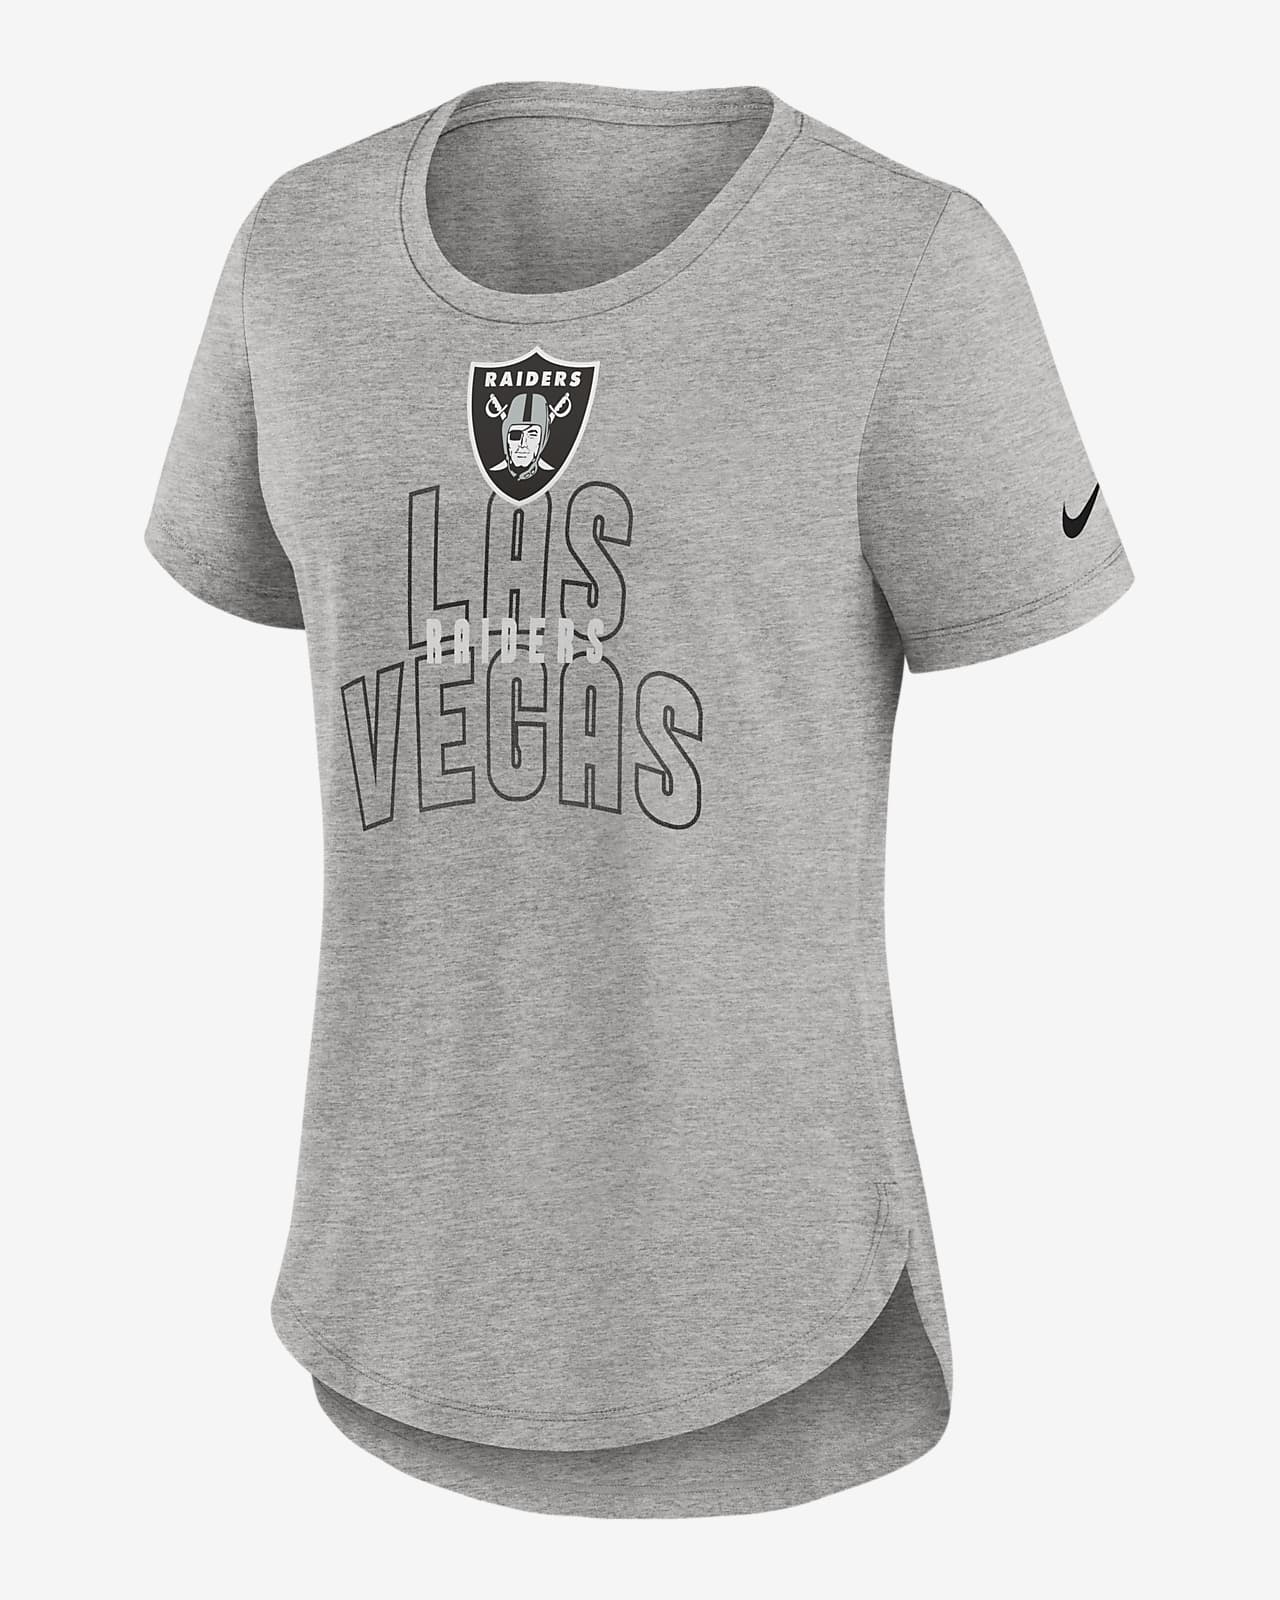 Nike Fashion (NFL Las Vegas Raiders) Women's T-Shirt